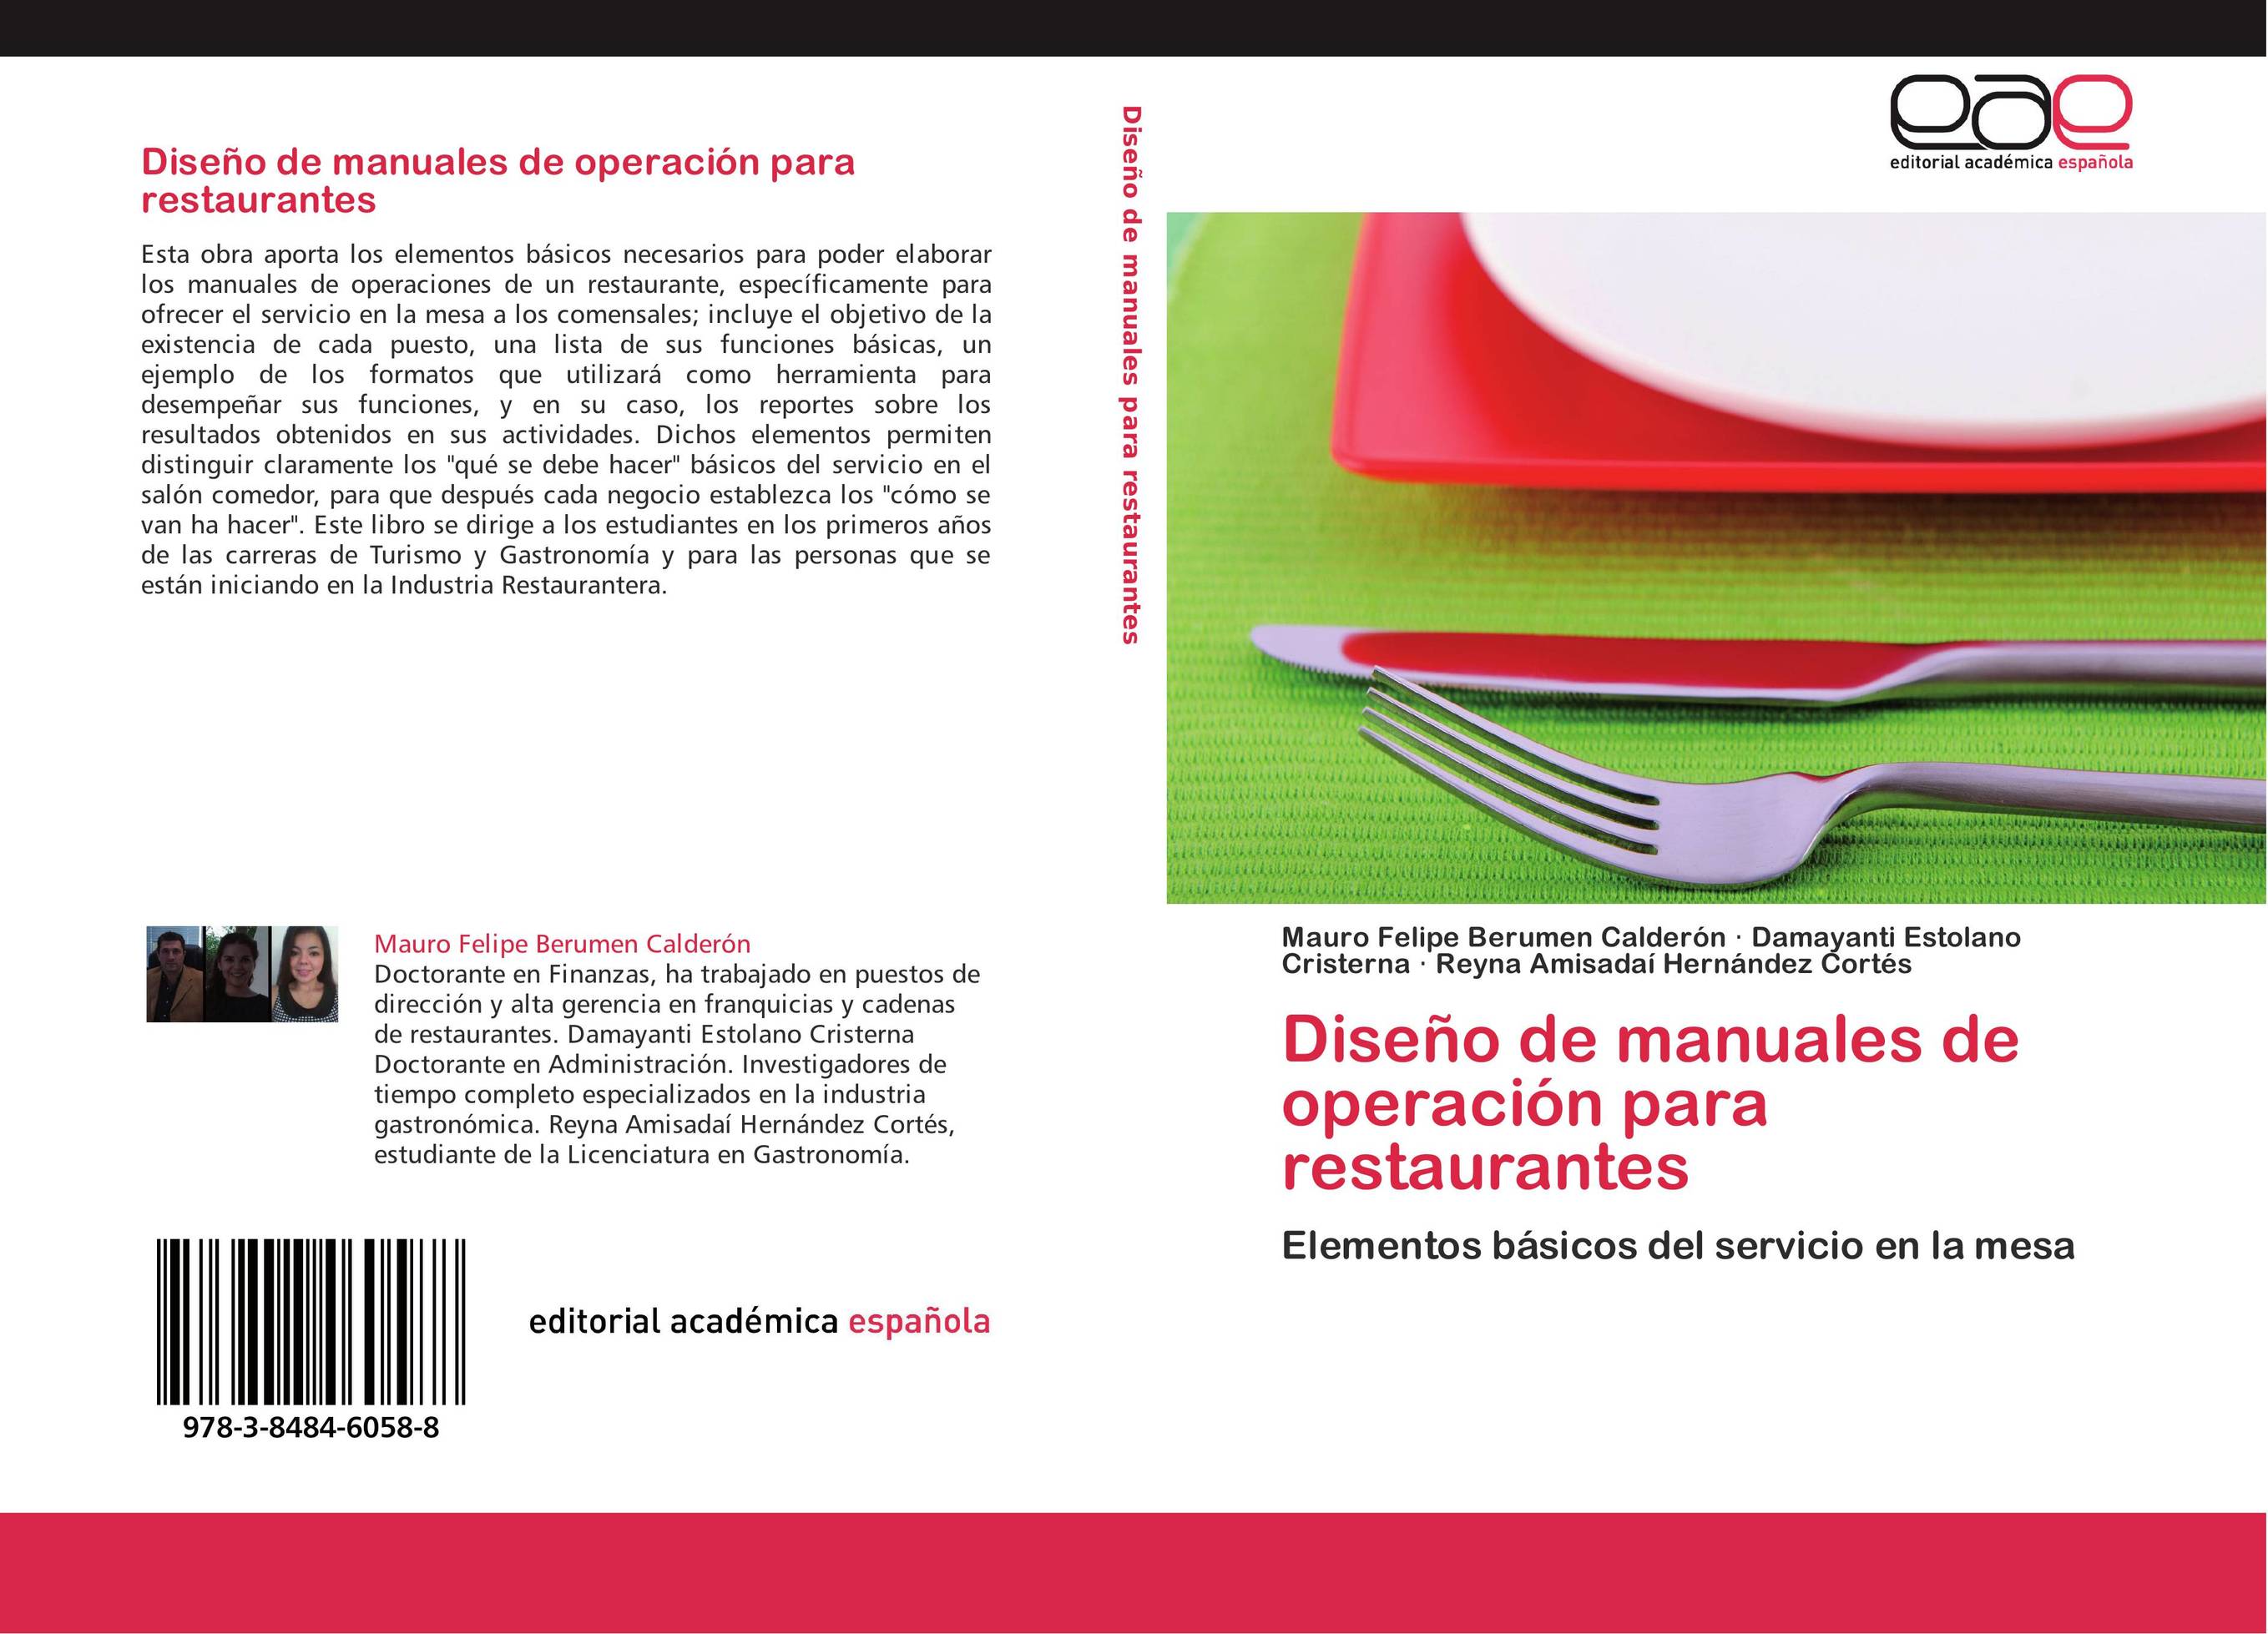 Diseño de manuales de operación para restaurantes